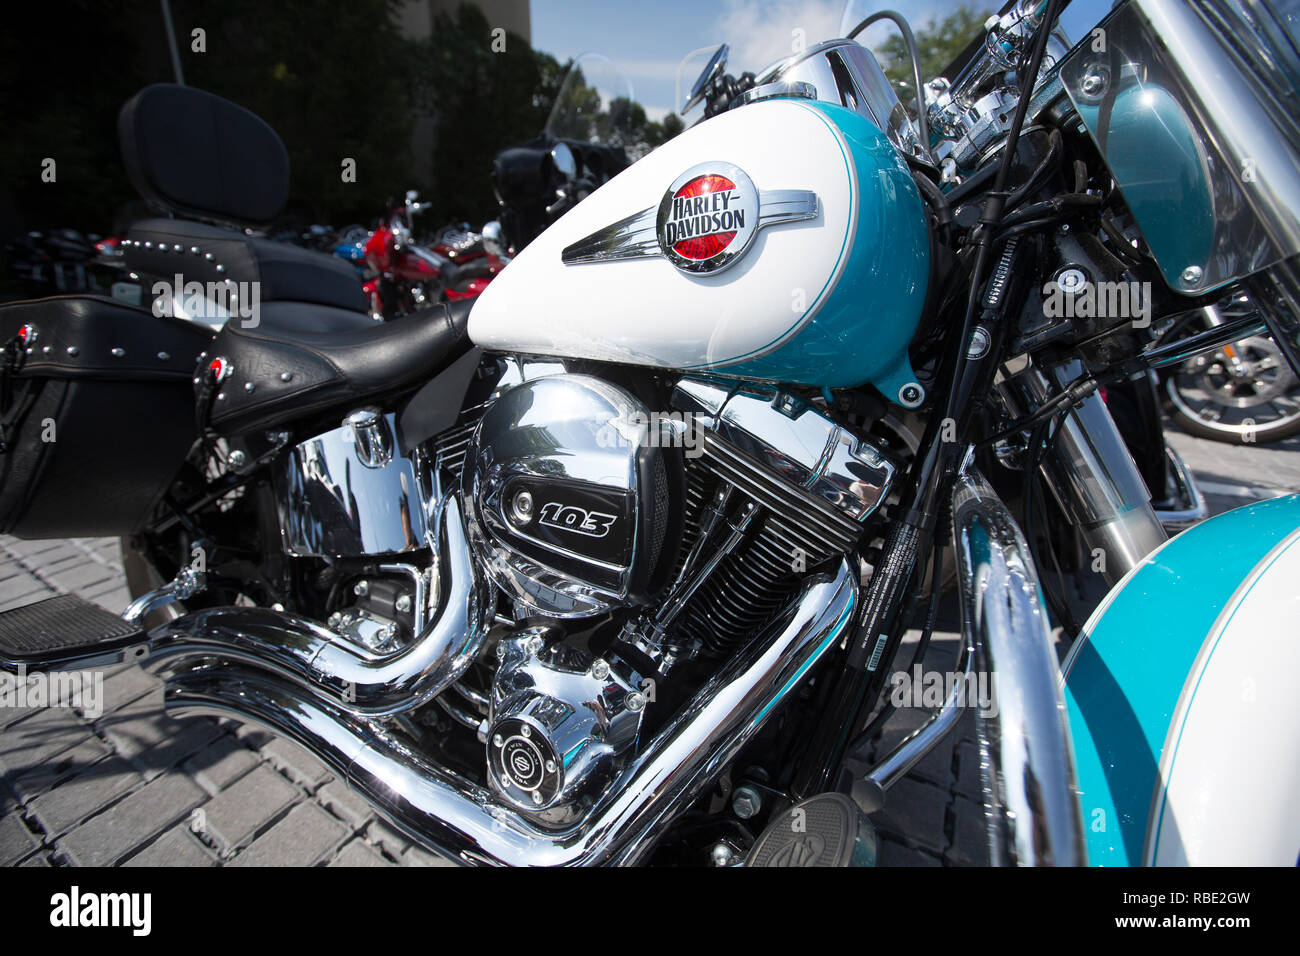 Ein von einem glänzenden, türkis und weiß lackierten Harley-Davidson Motorrad Stockfoto